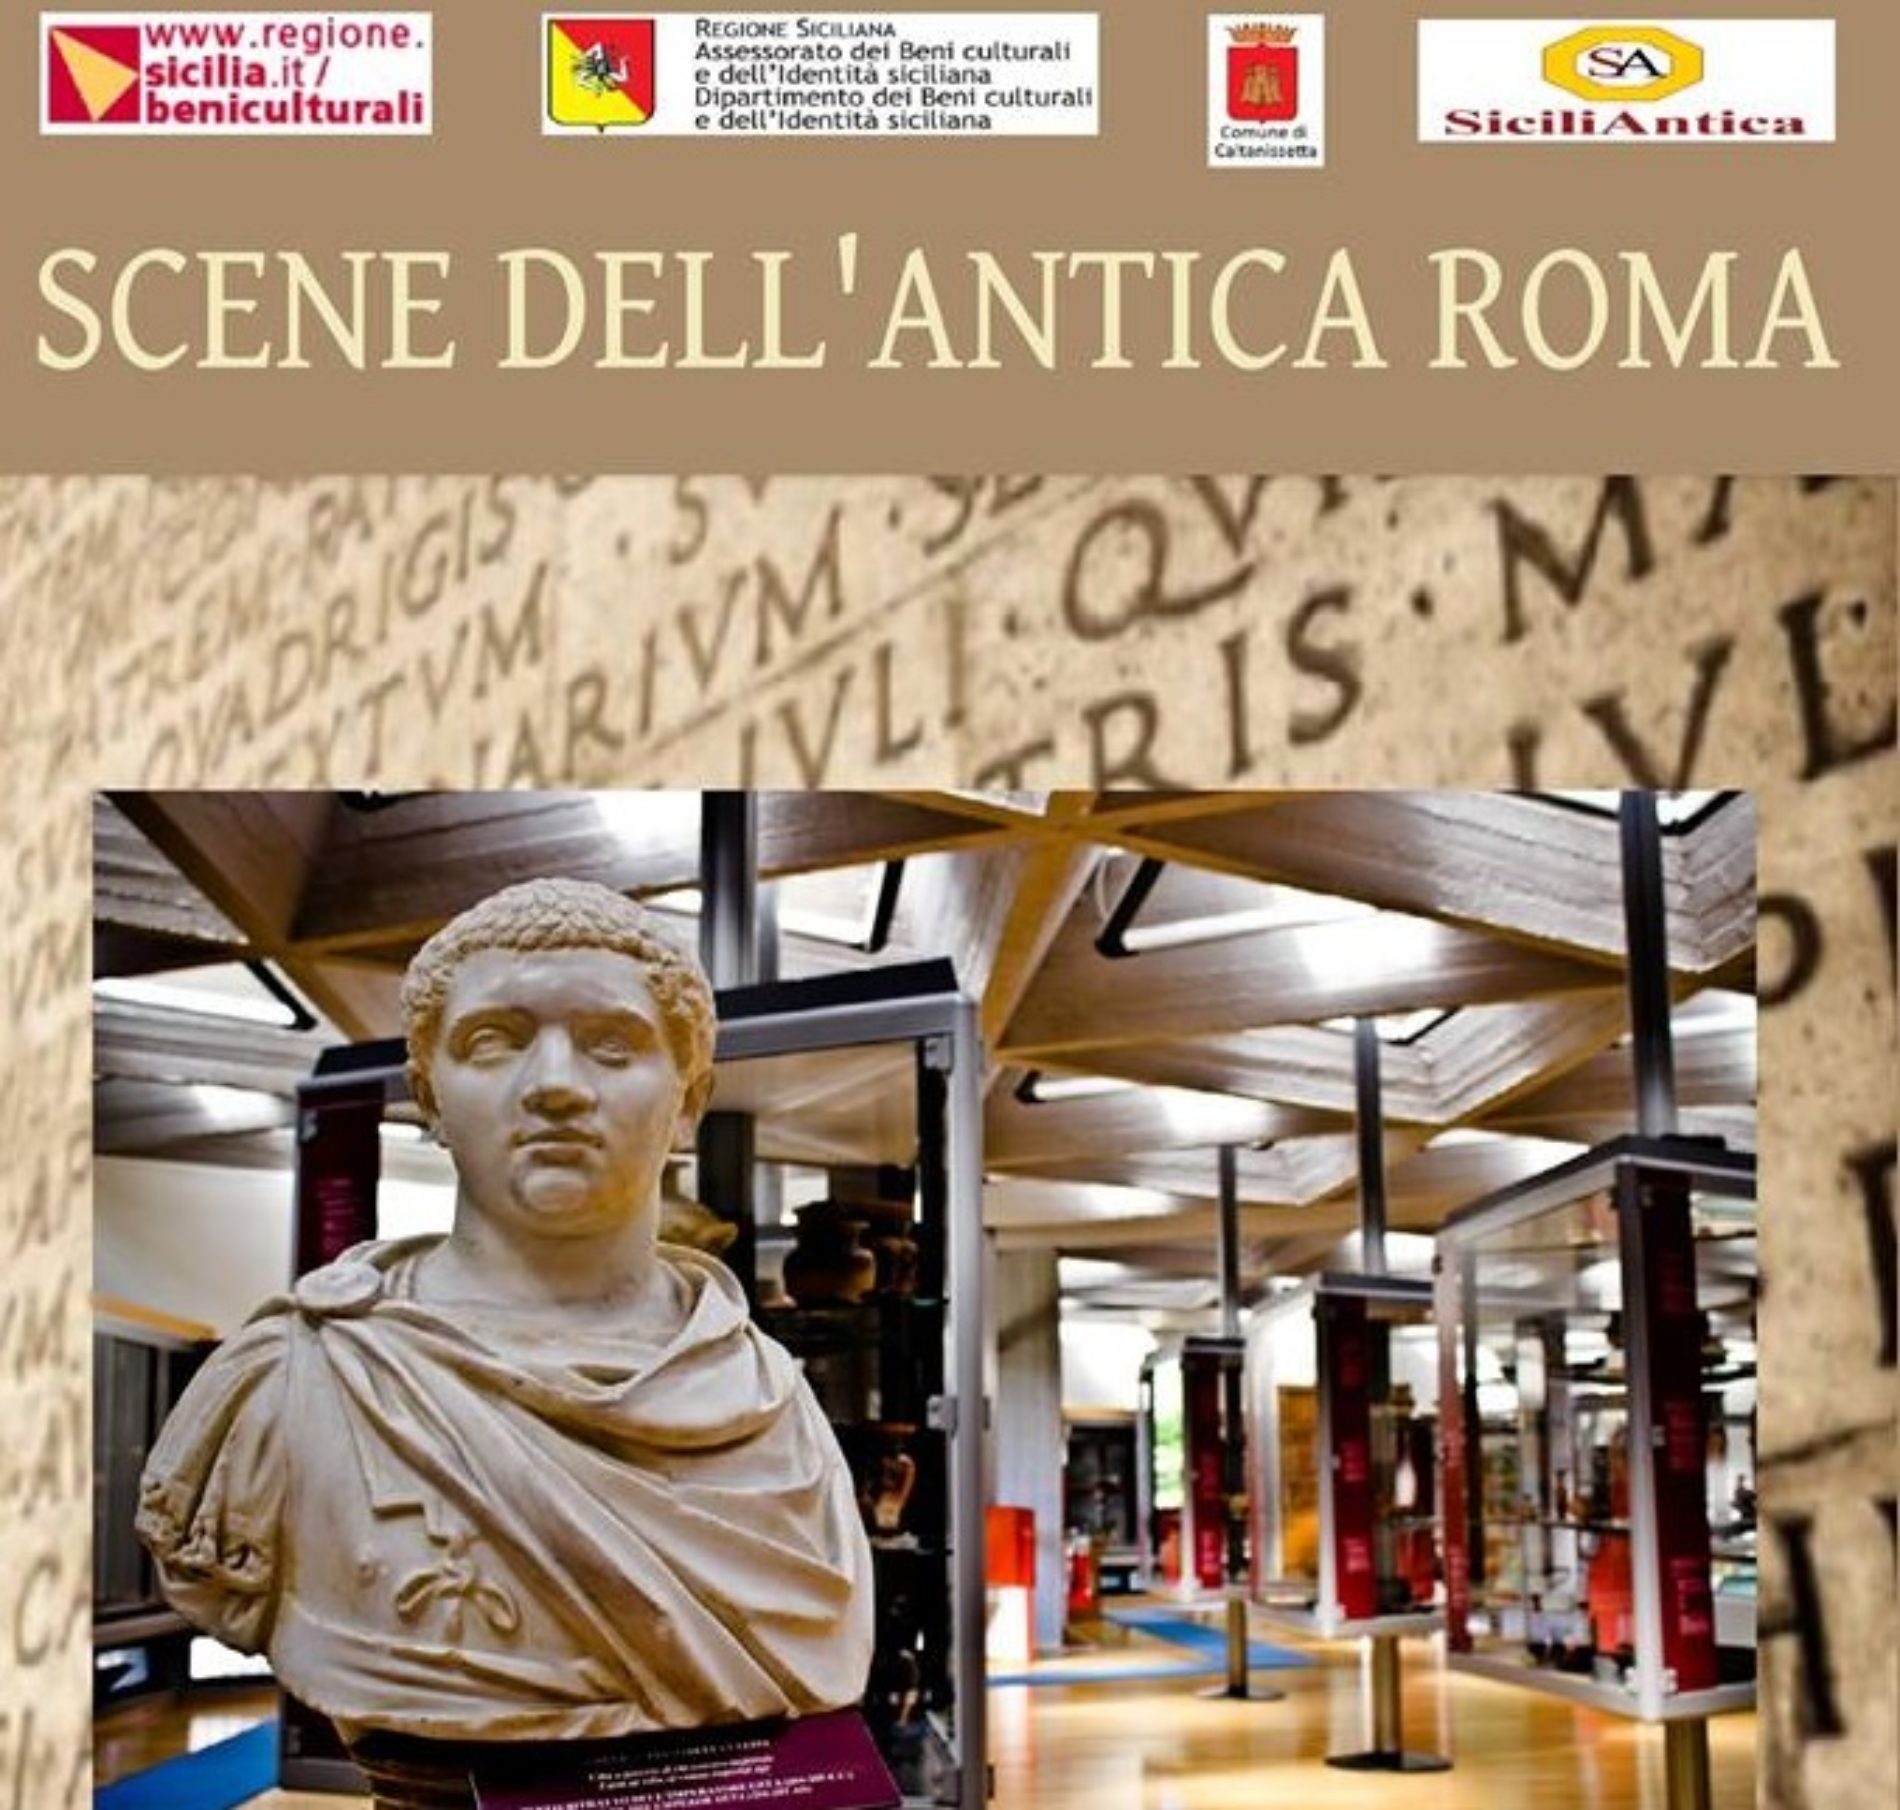 SCENE DELL’ANTICA ROMA- ricostruzione storica presso il Museo Archeologico di Caltanissetta